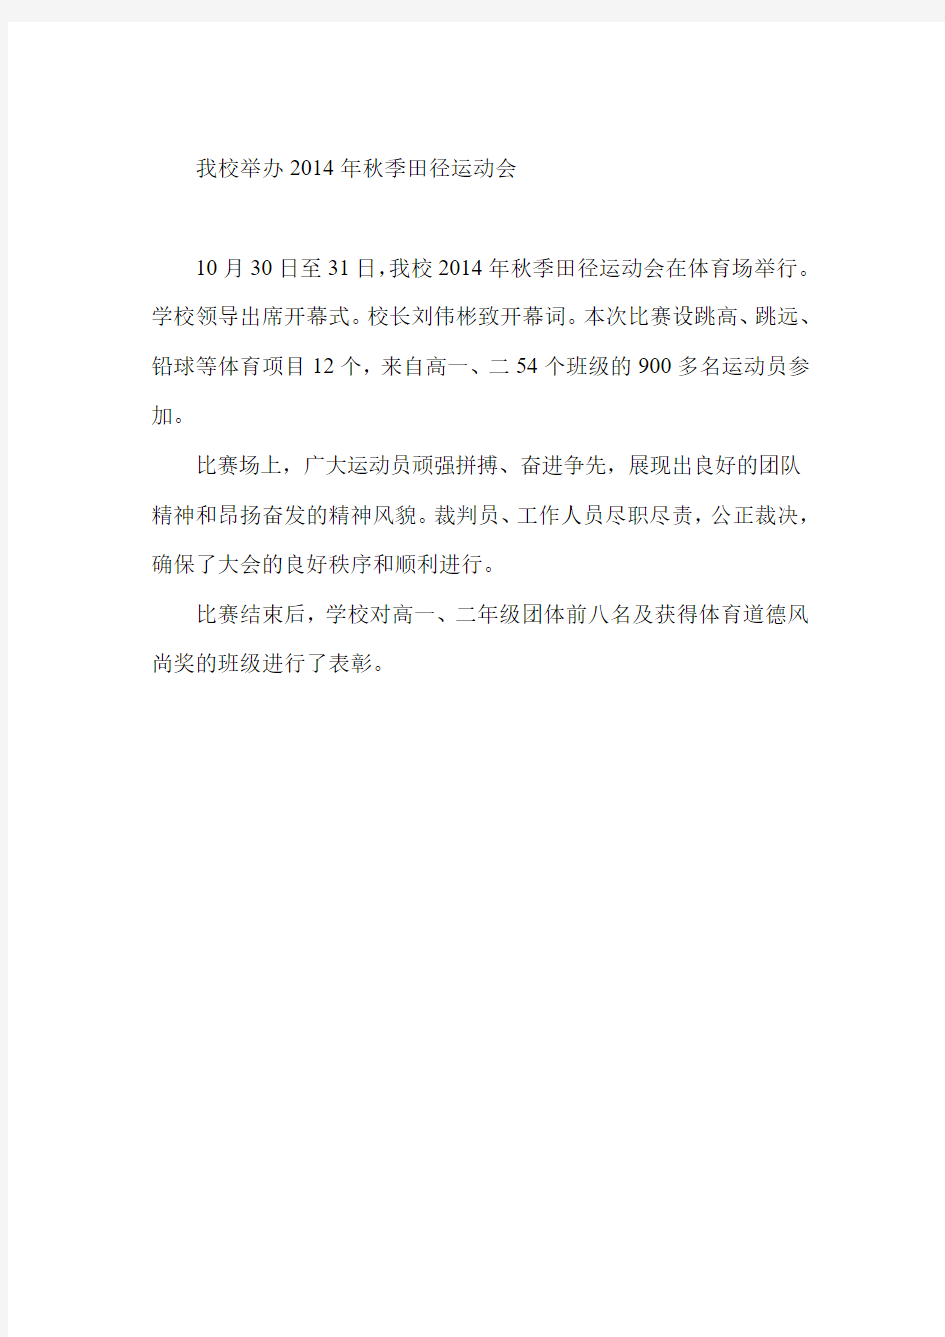 北京北京广渠门中学高级教师高金英到我校作报告